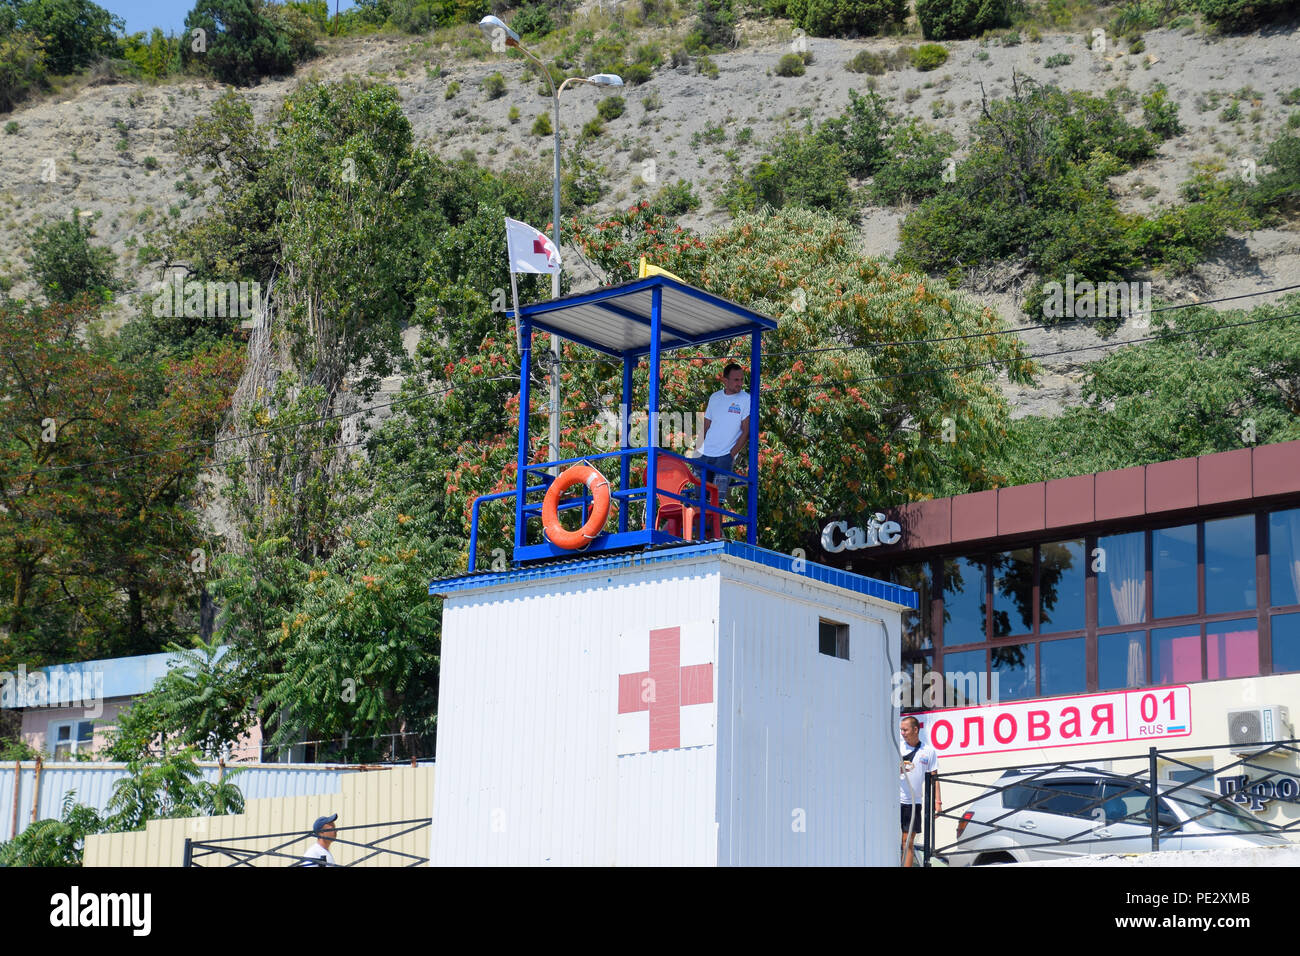 Novorossisk, Rusia - Agosto 06, 2018: el socorrista en la torre de rescate observa la orilla. Playa de Novorossiysk. Foto de stock